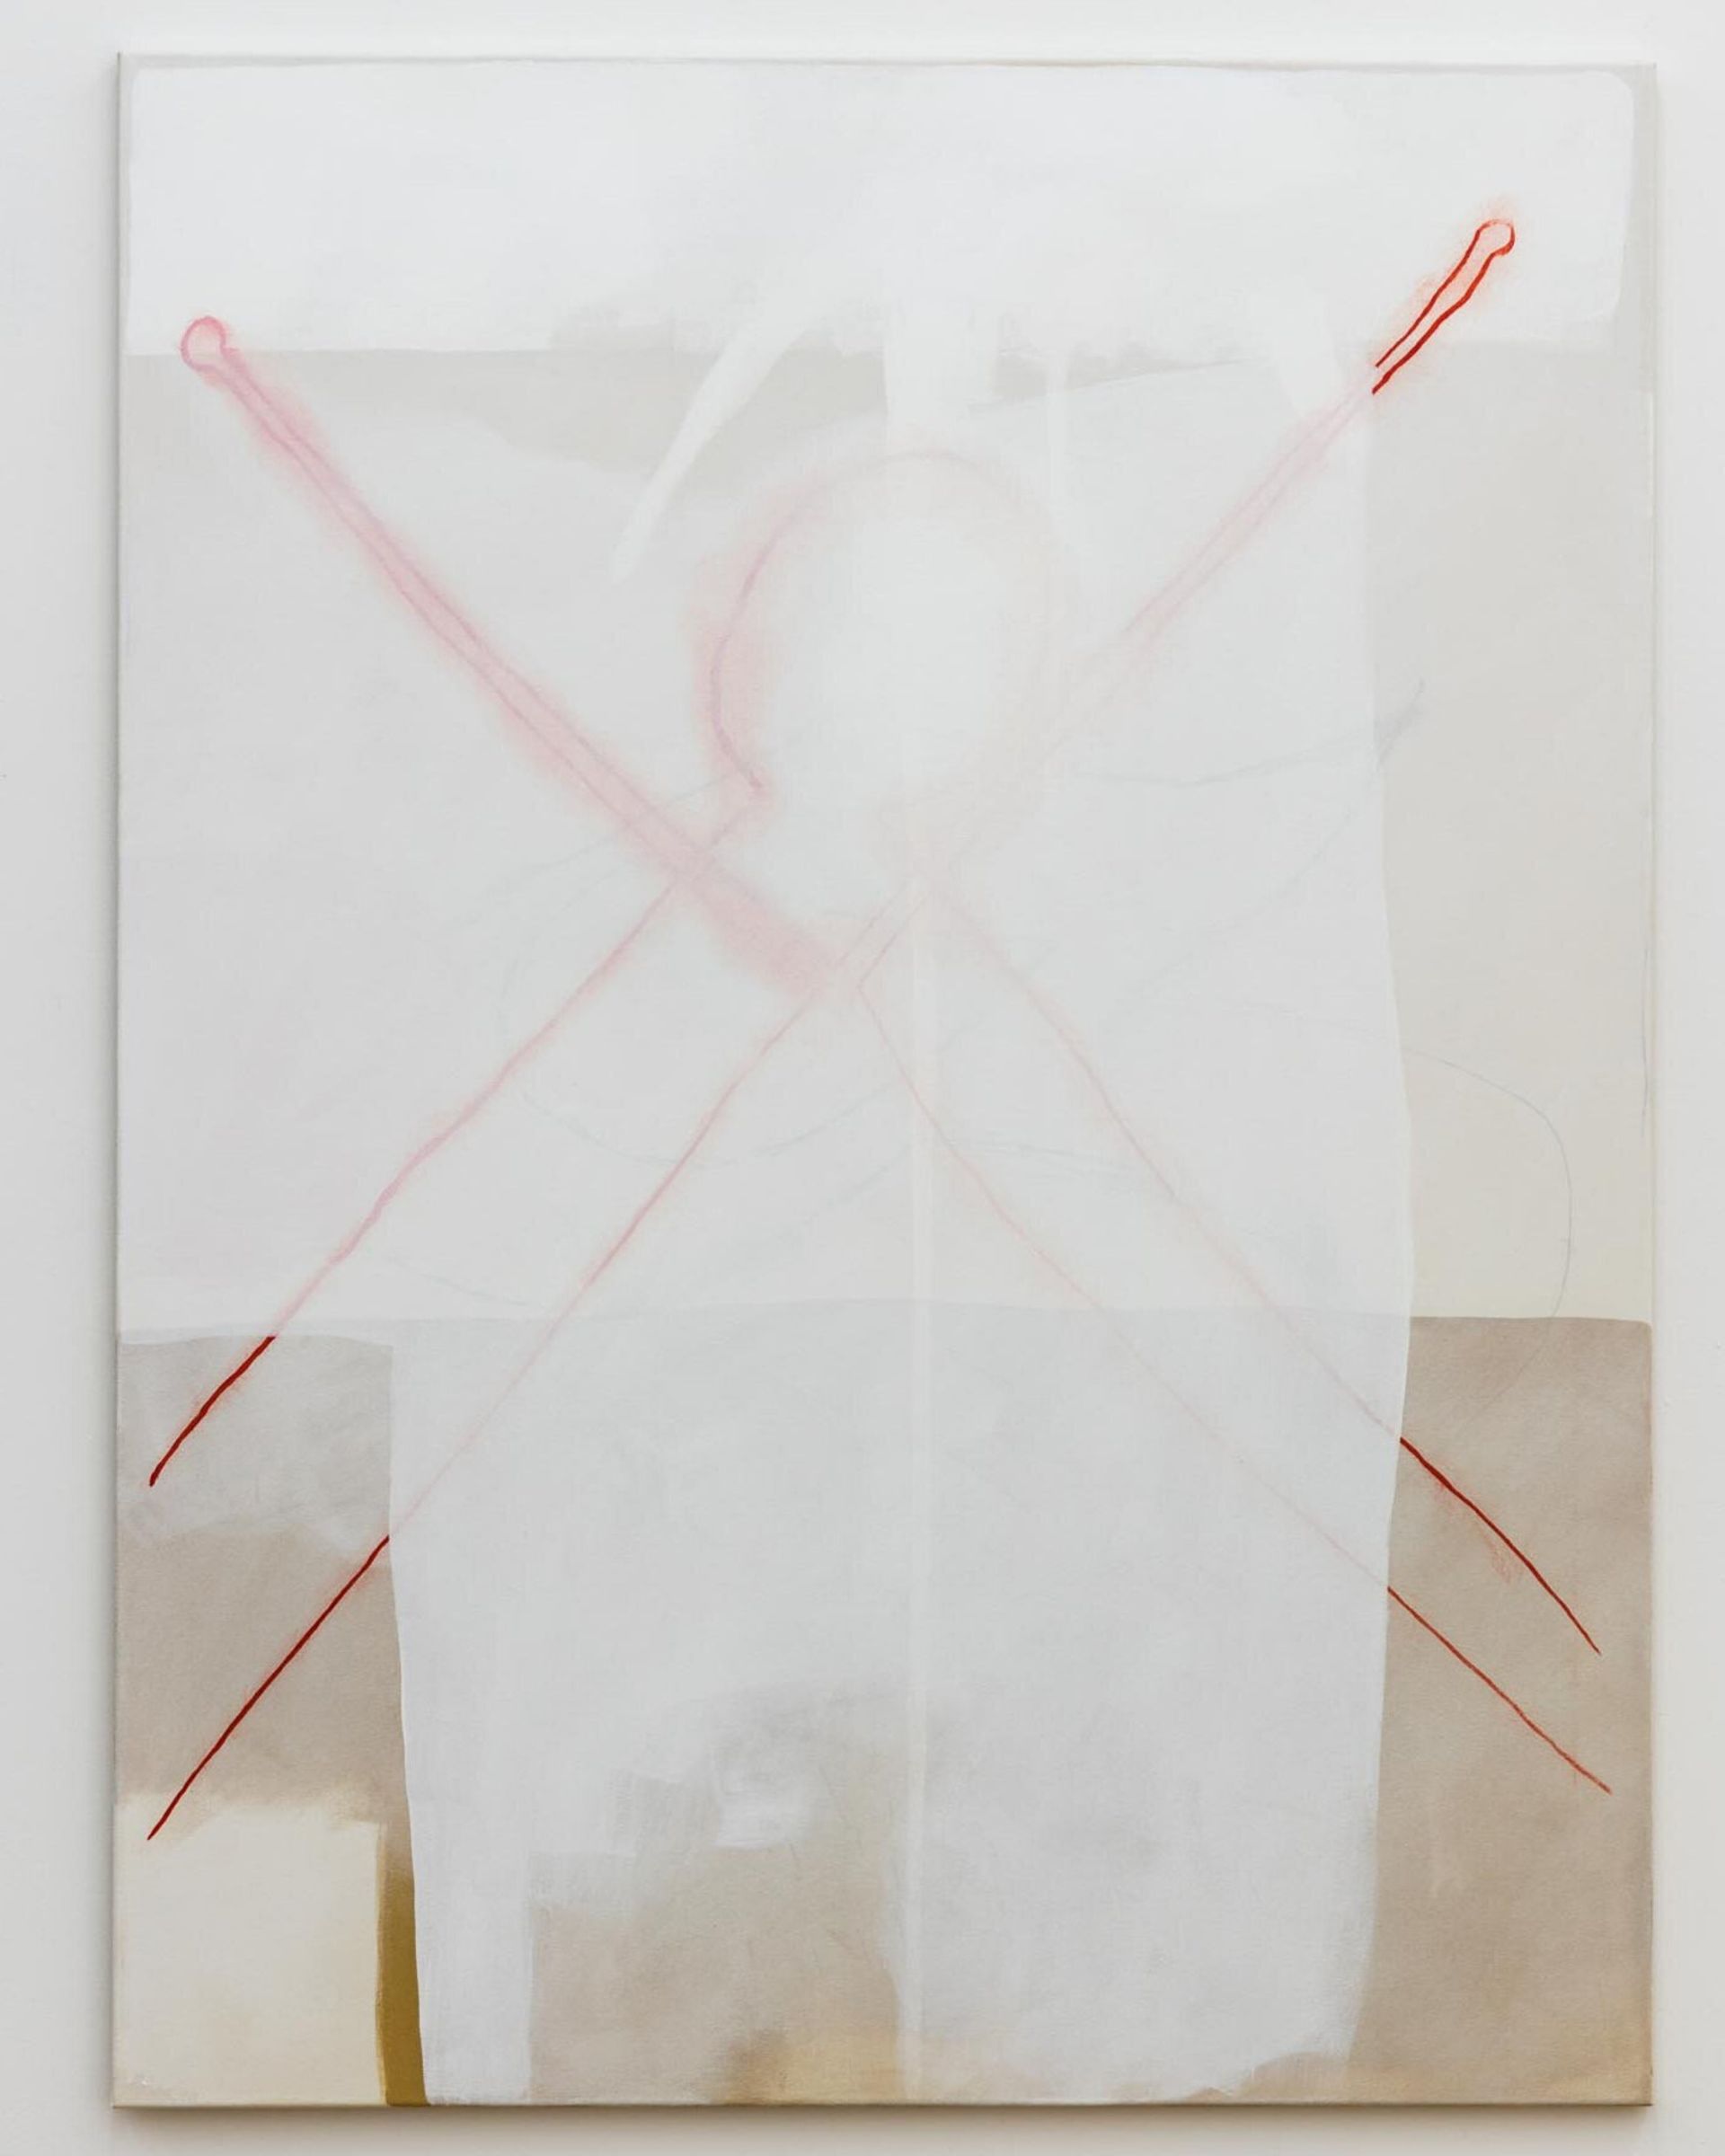 Malte Zenses, Mit Karin im Golf, 2019, oil and pencil on canvas, 160 × 120 cm
